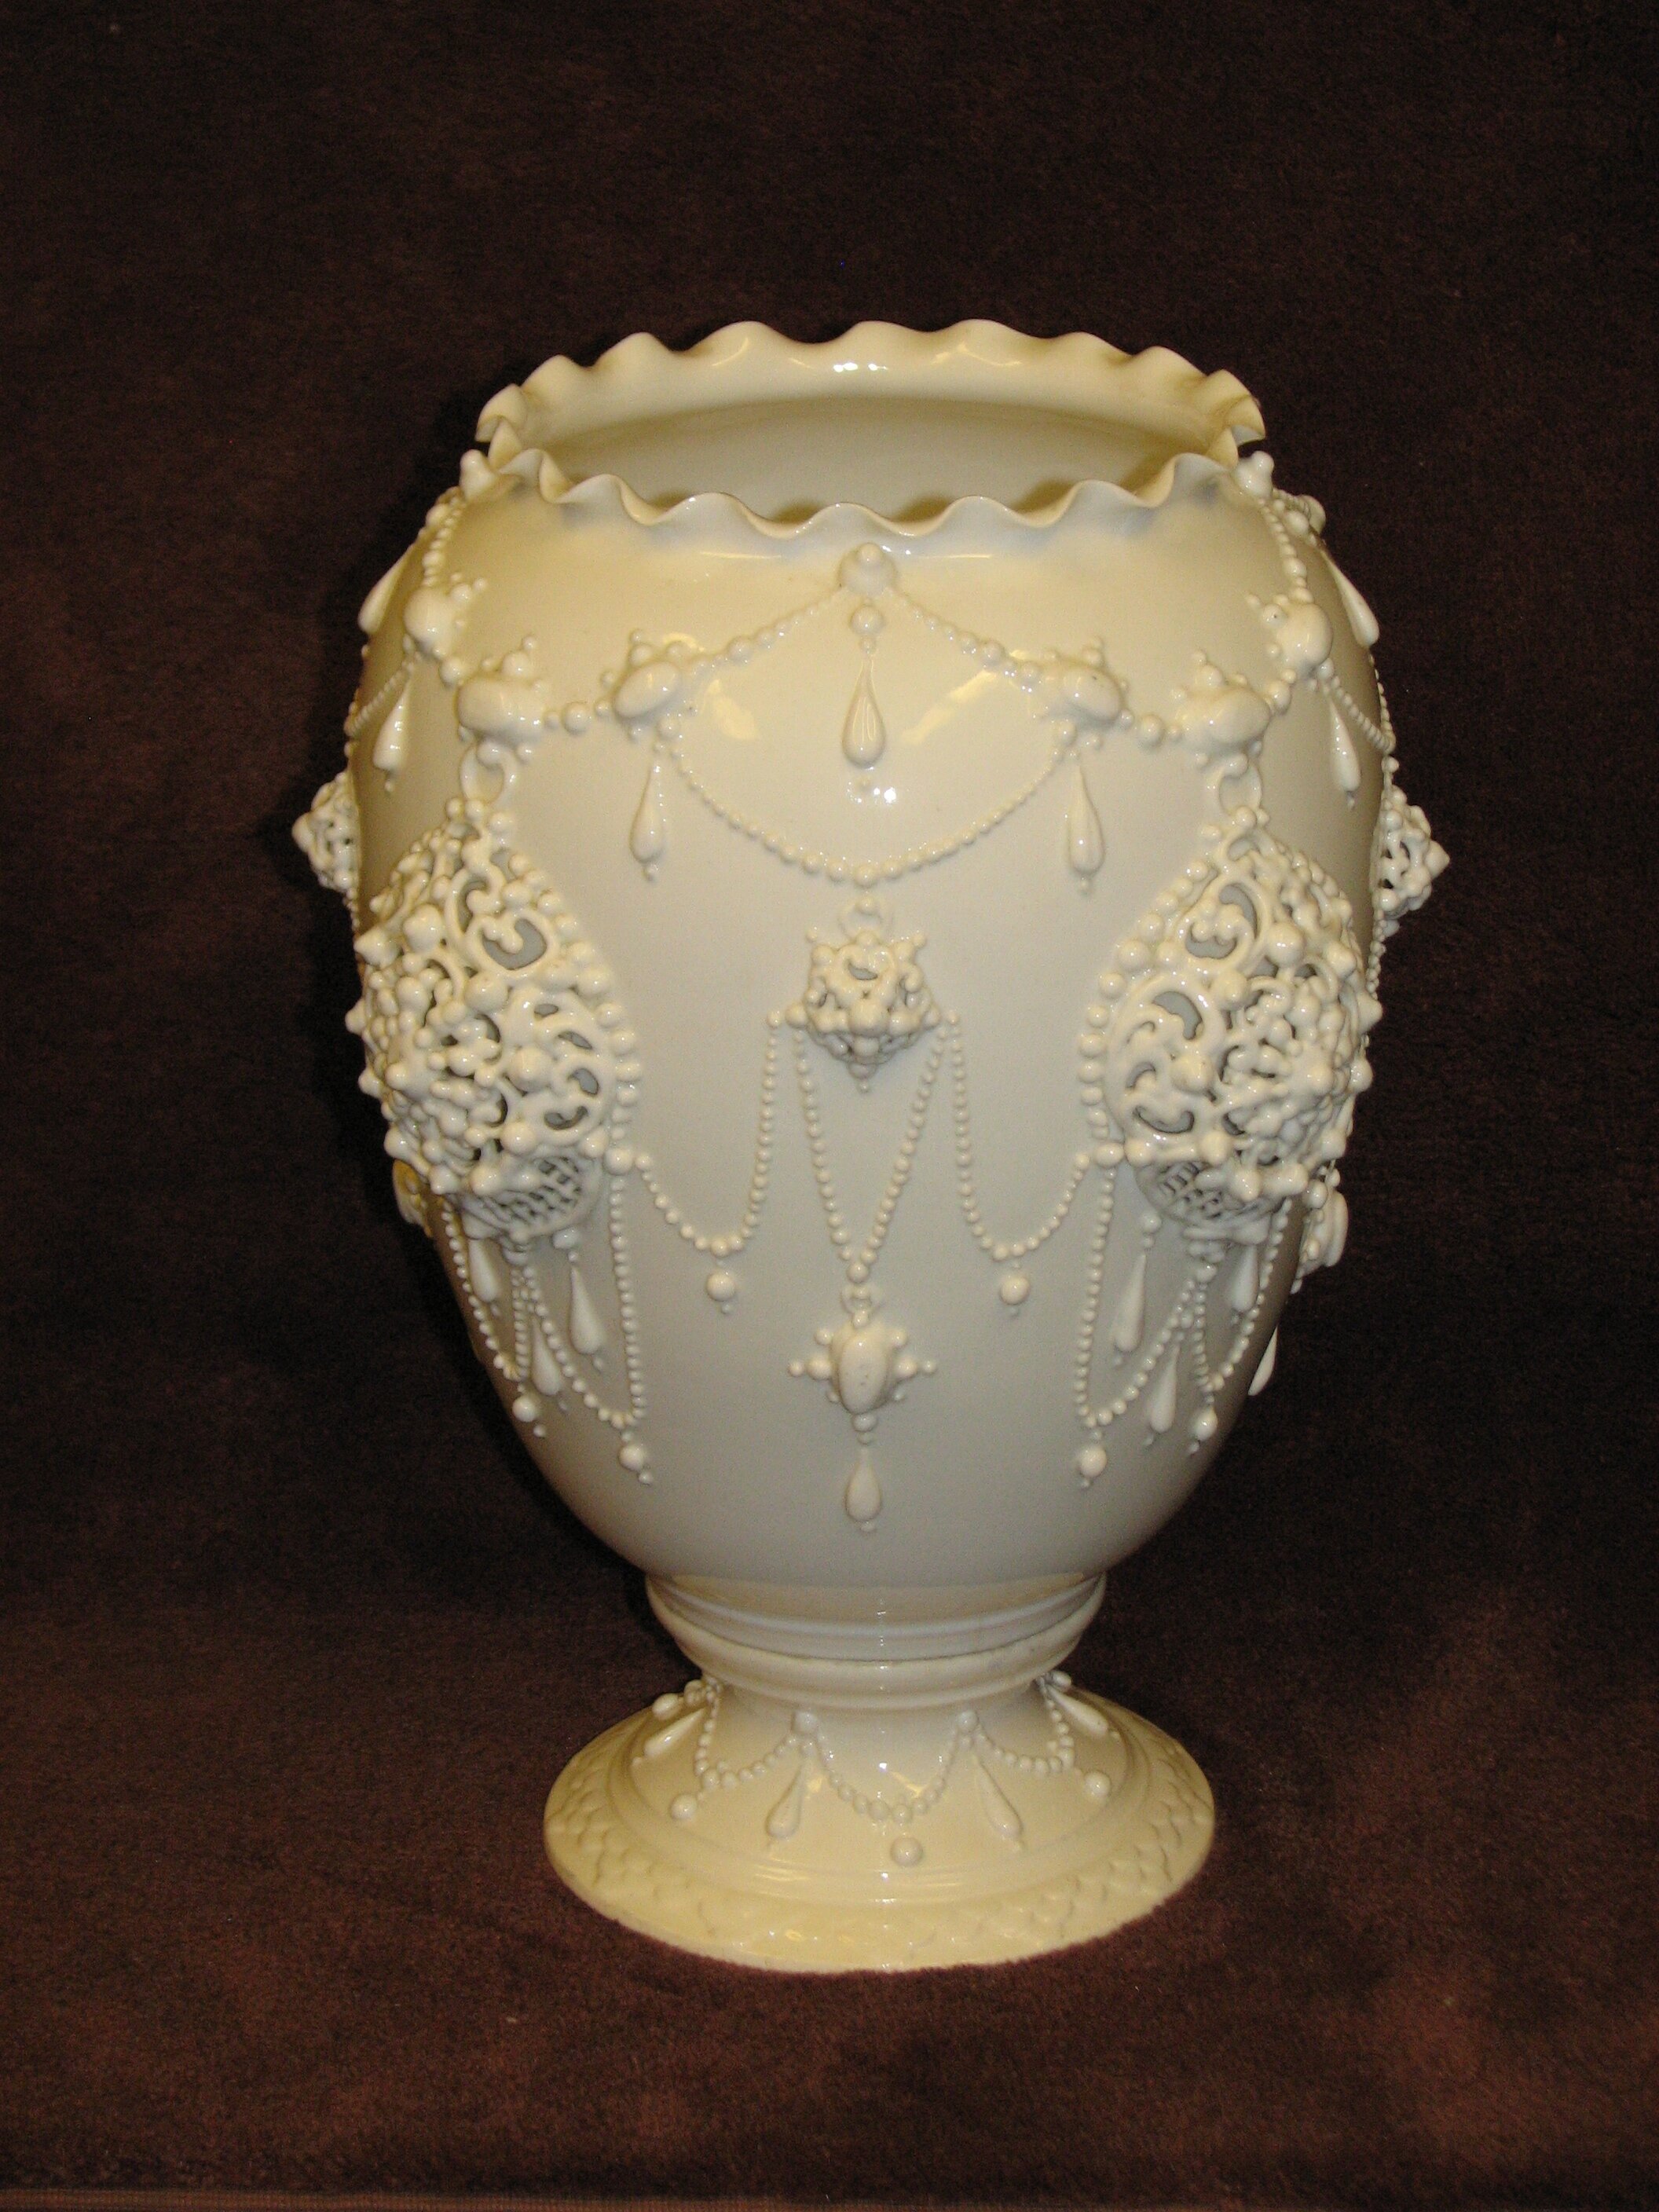 Lotus Ware Laconian Vase, Museum of Ceramics